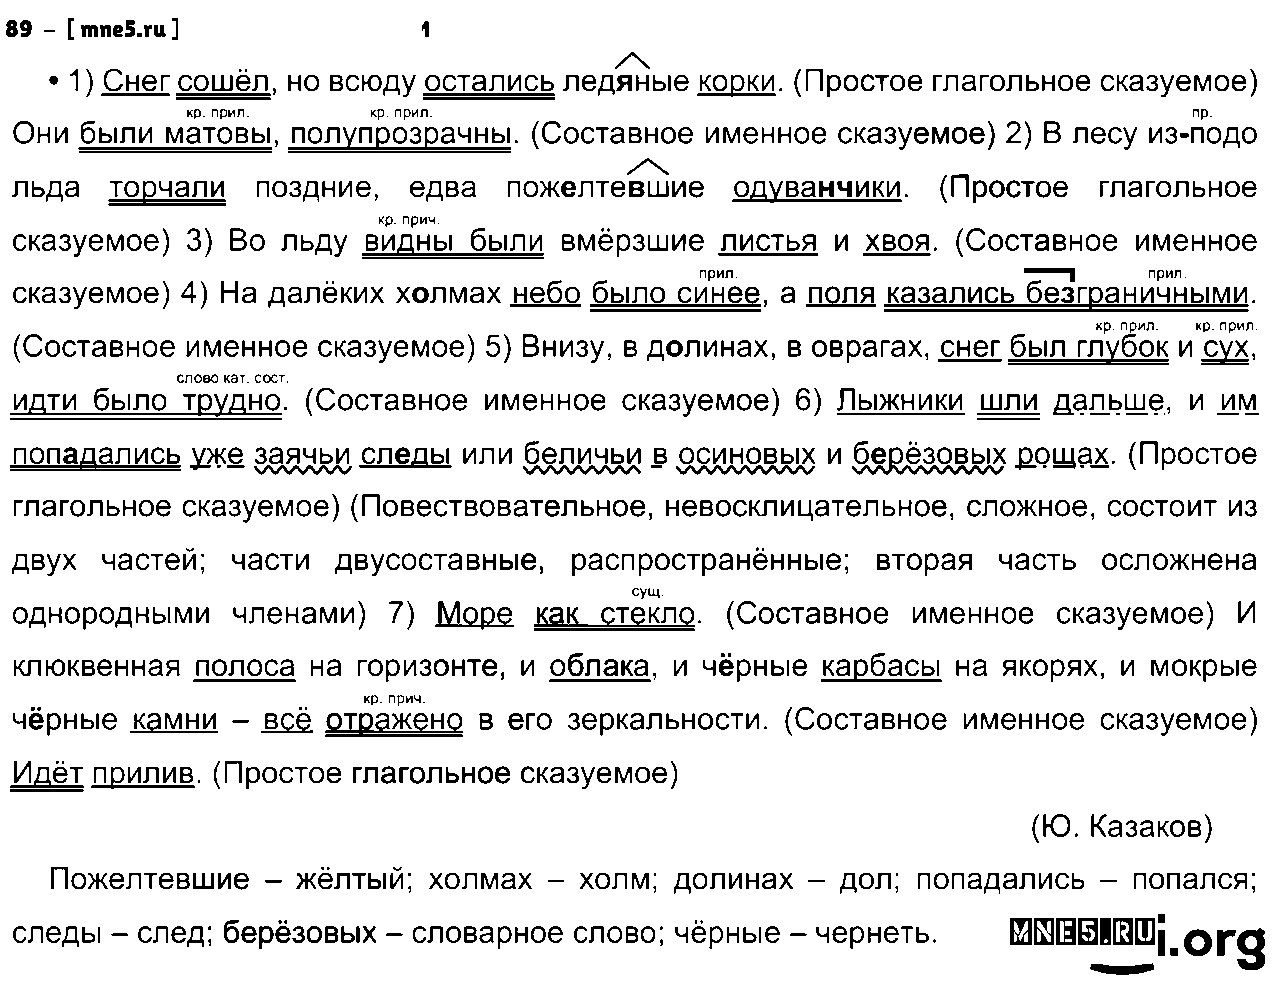 ГДЗ Русский язык 8 класс - 89